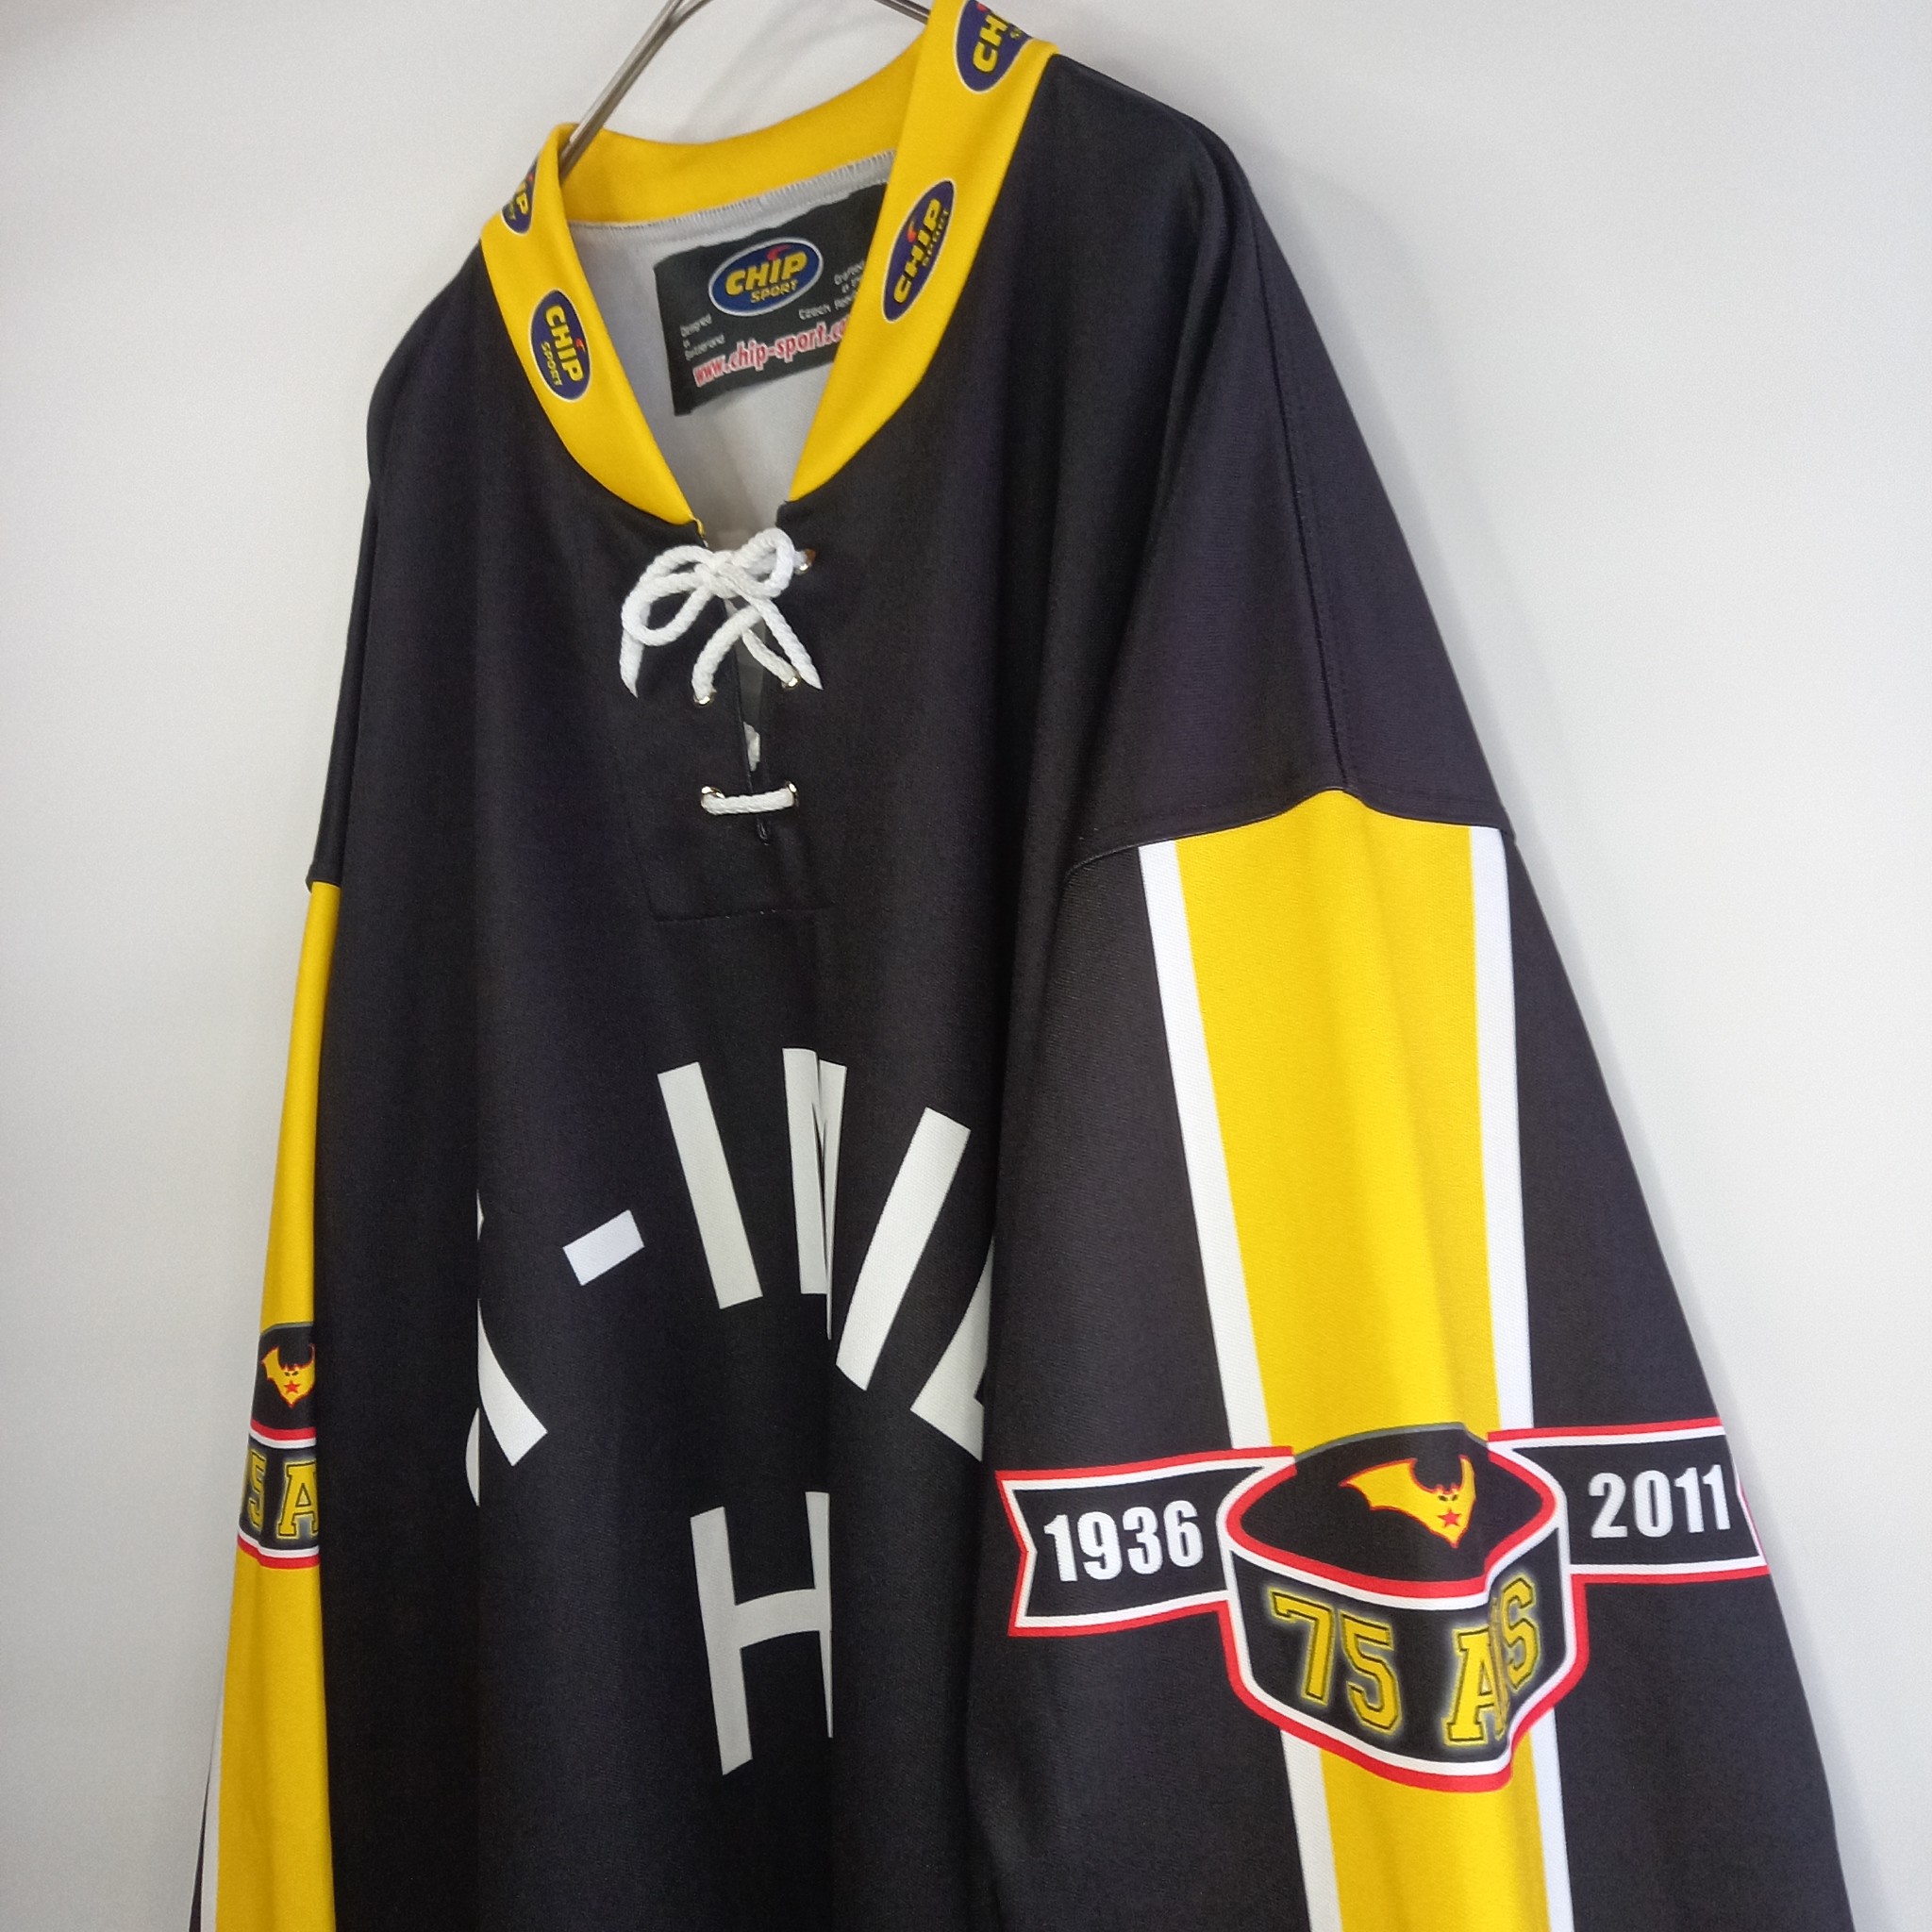 クロアチア製 CHIP SPORT ホッケーシャツ ゲームシャツ NHL ロンT XL